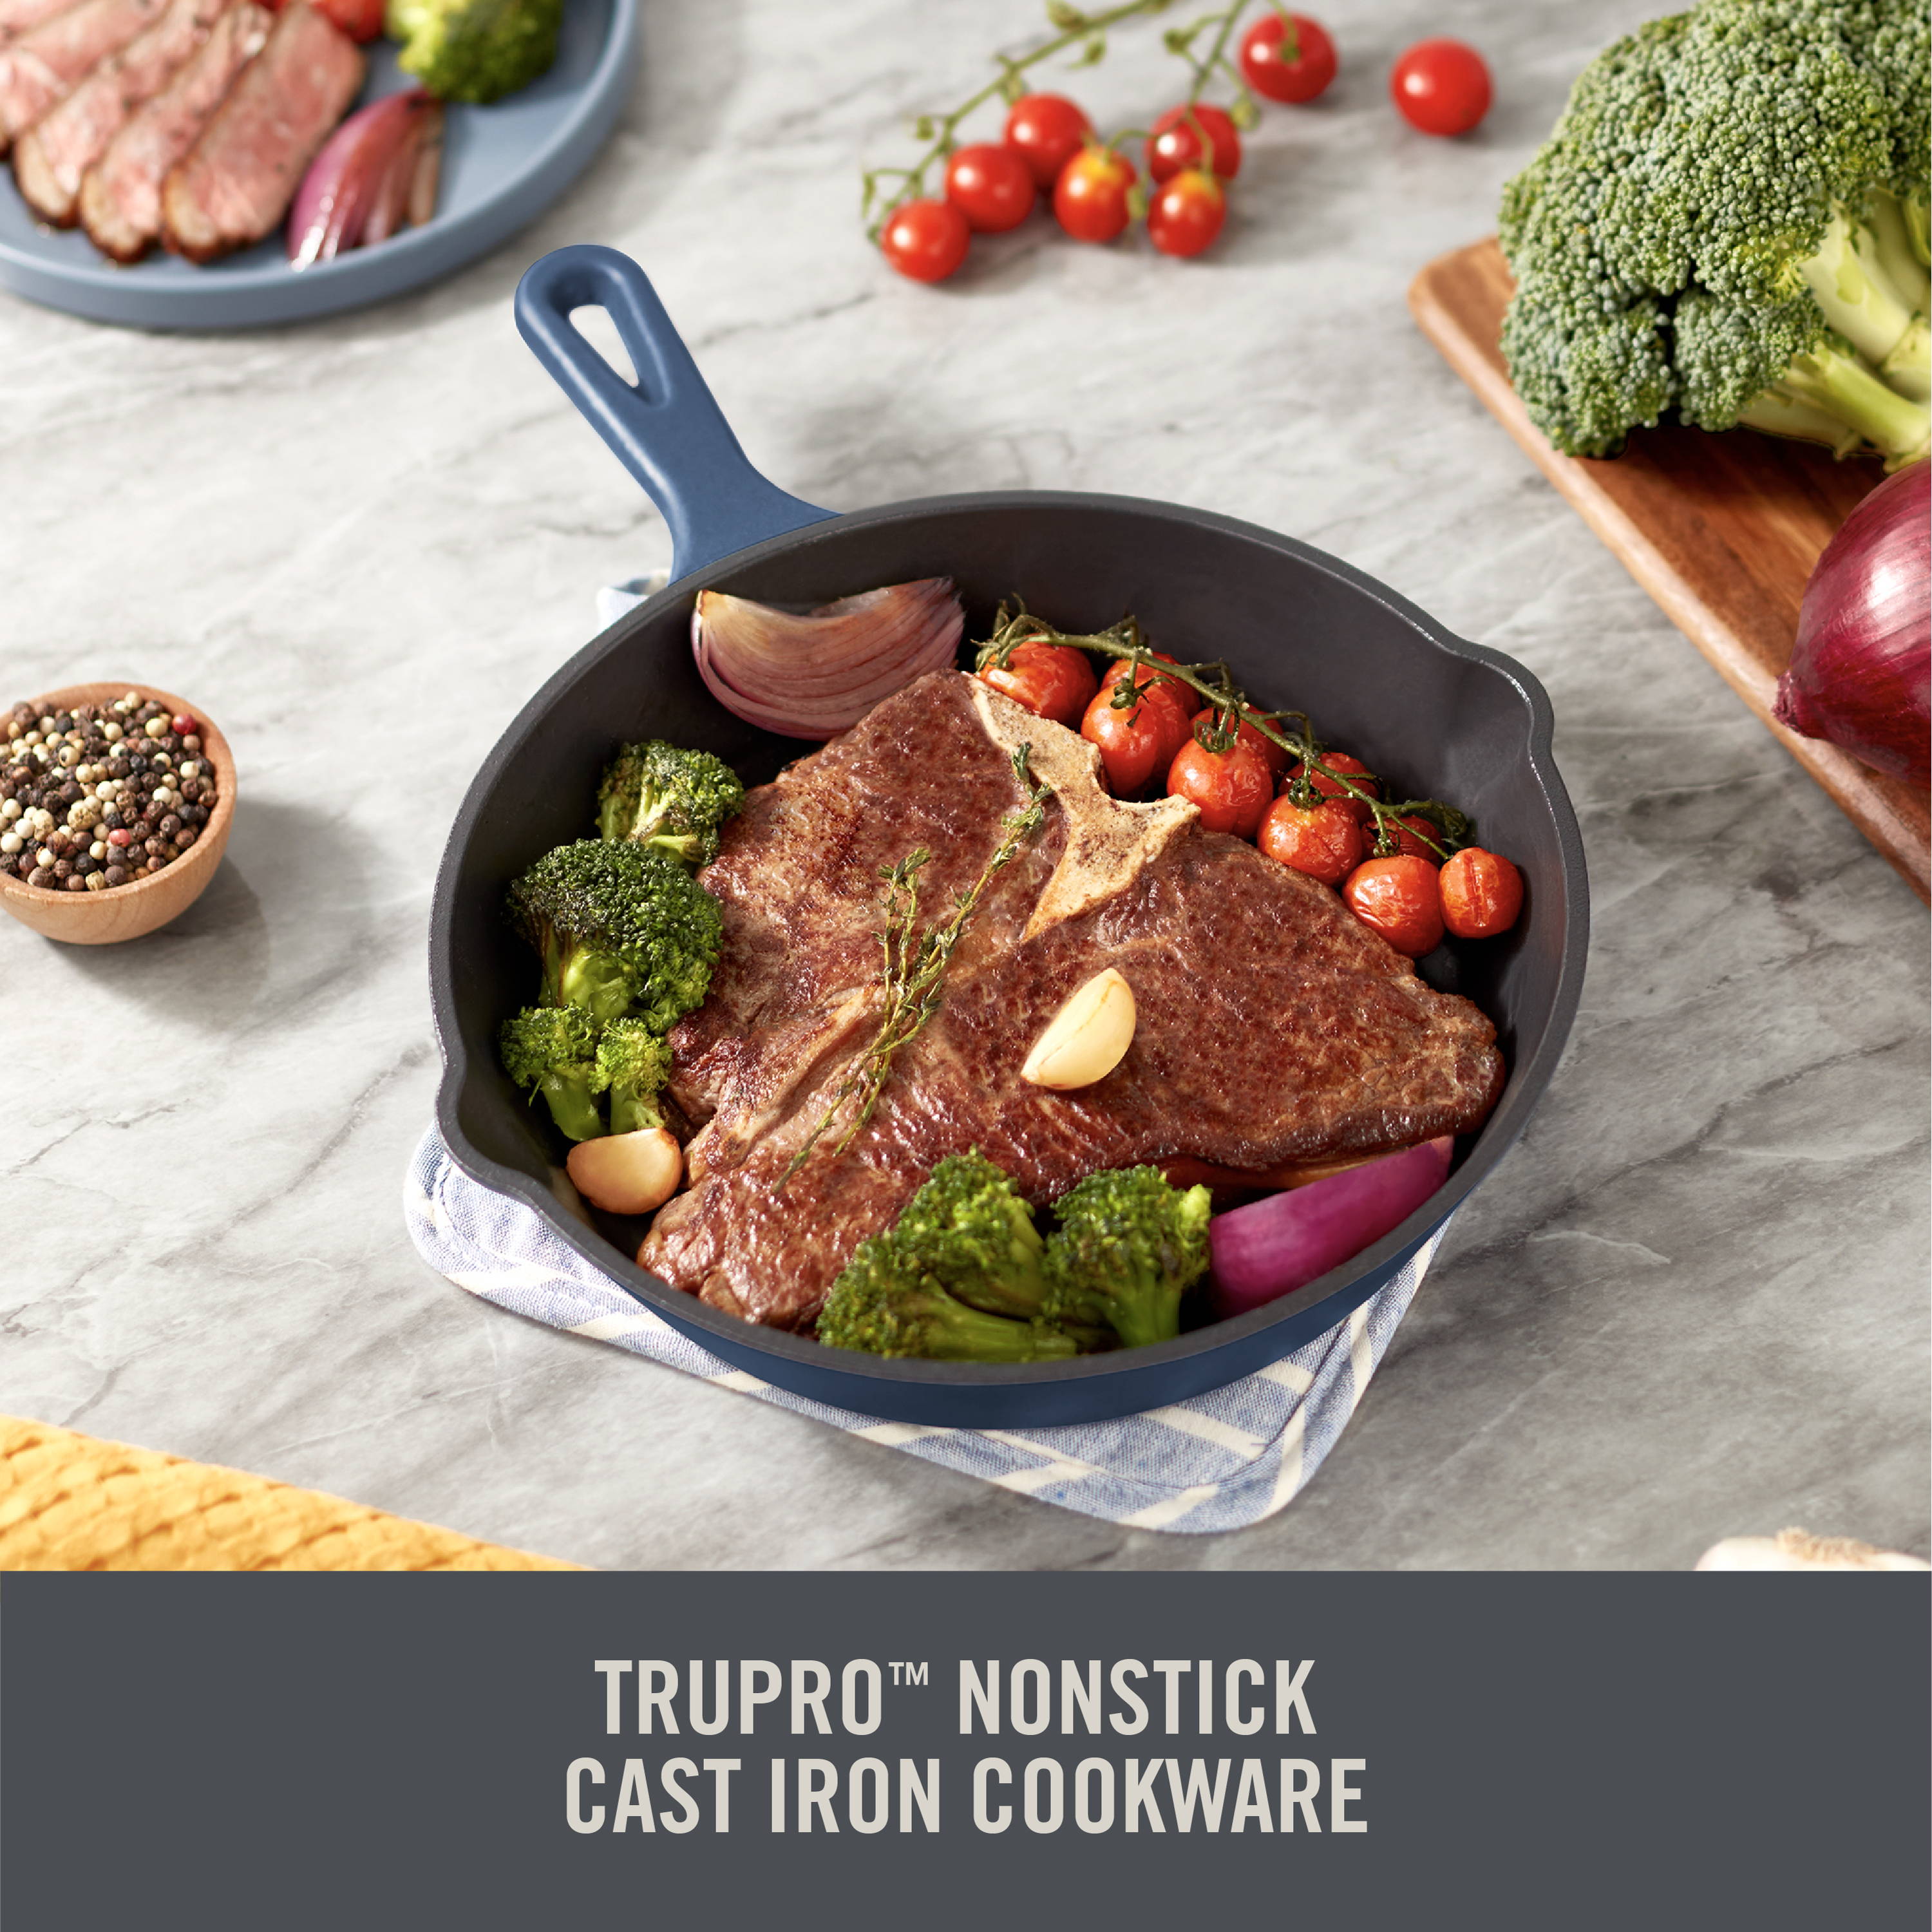 TruPro Nonstick Cast Iron Cookware